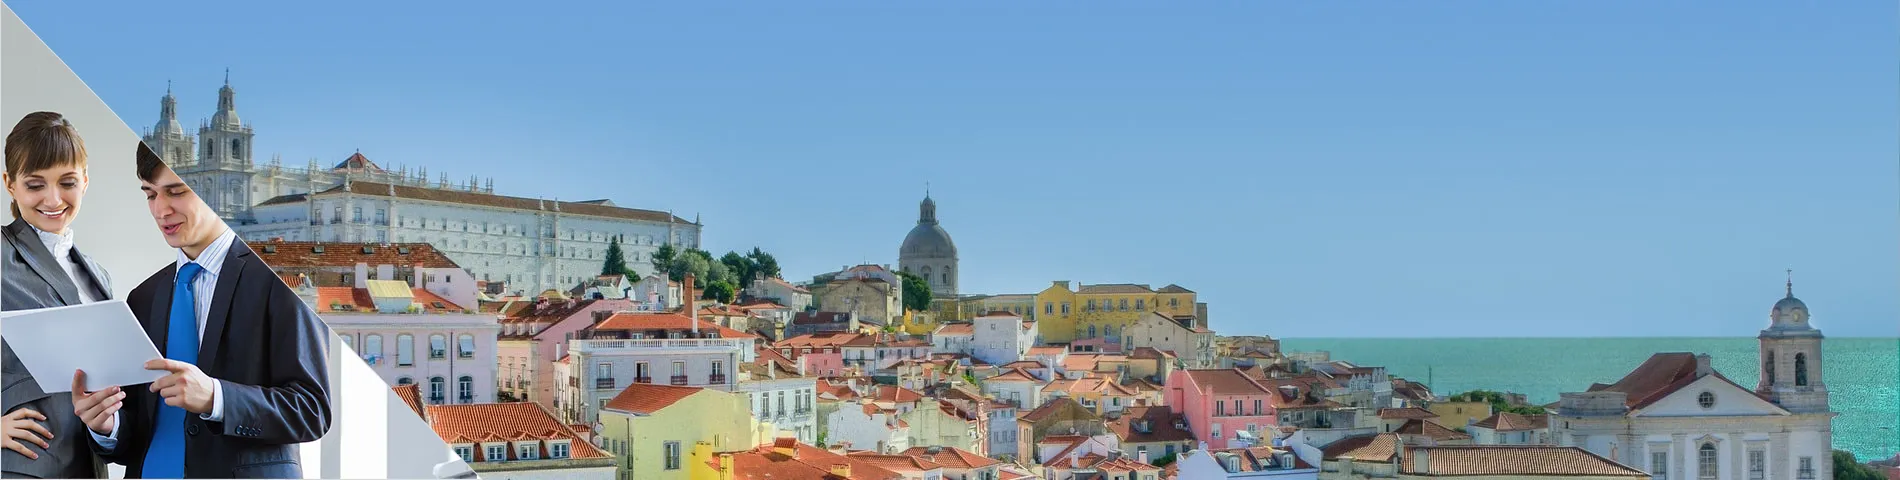 Lisboa - Negocis Individuals